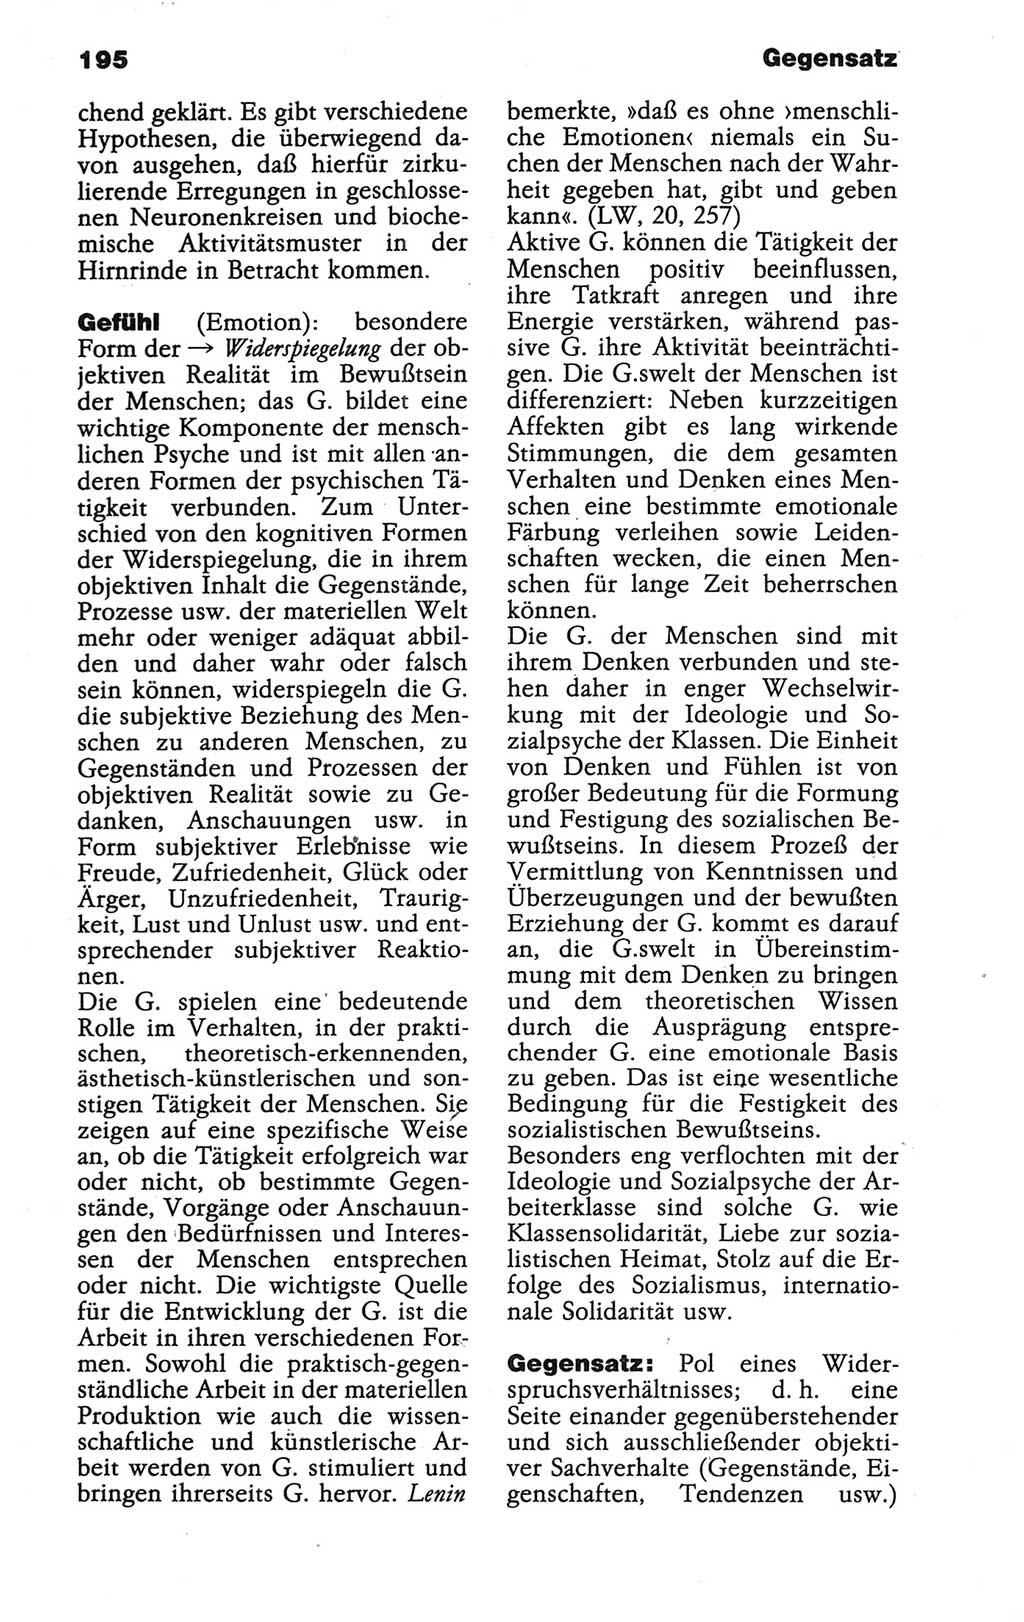 Wörterbuch der marxistisch-leninistischen Philosophie [Deutsche Demokratische Republik (DDR)] 1986, Seite 195 (Wb. ML Phil. DDR 1986, S. 195)